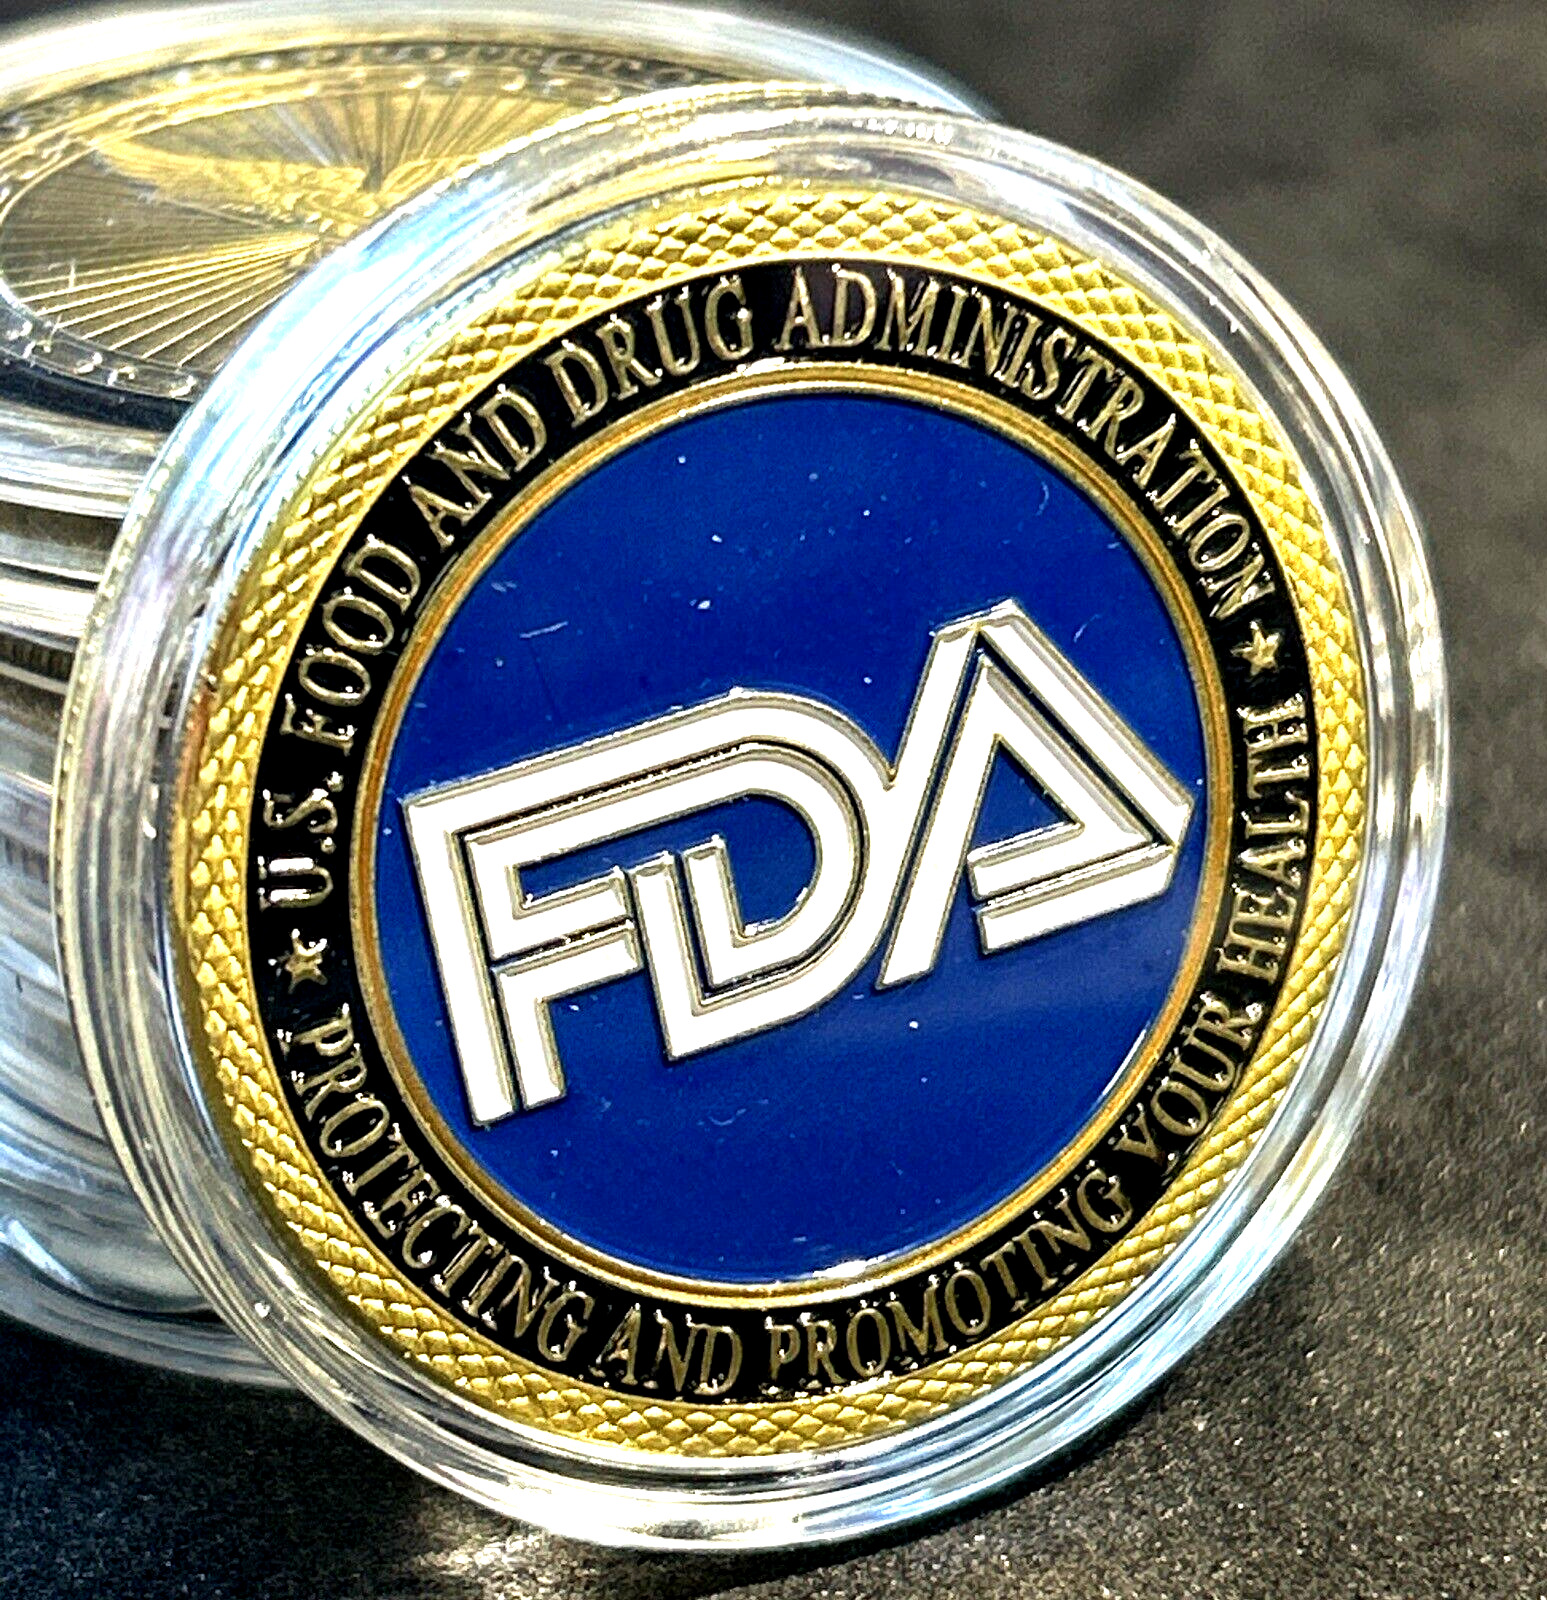 FDA US Food & Drug Administration Challenge Coin